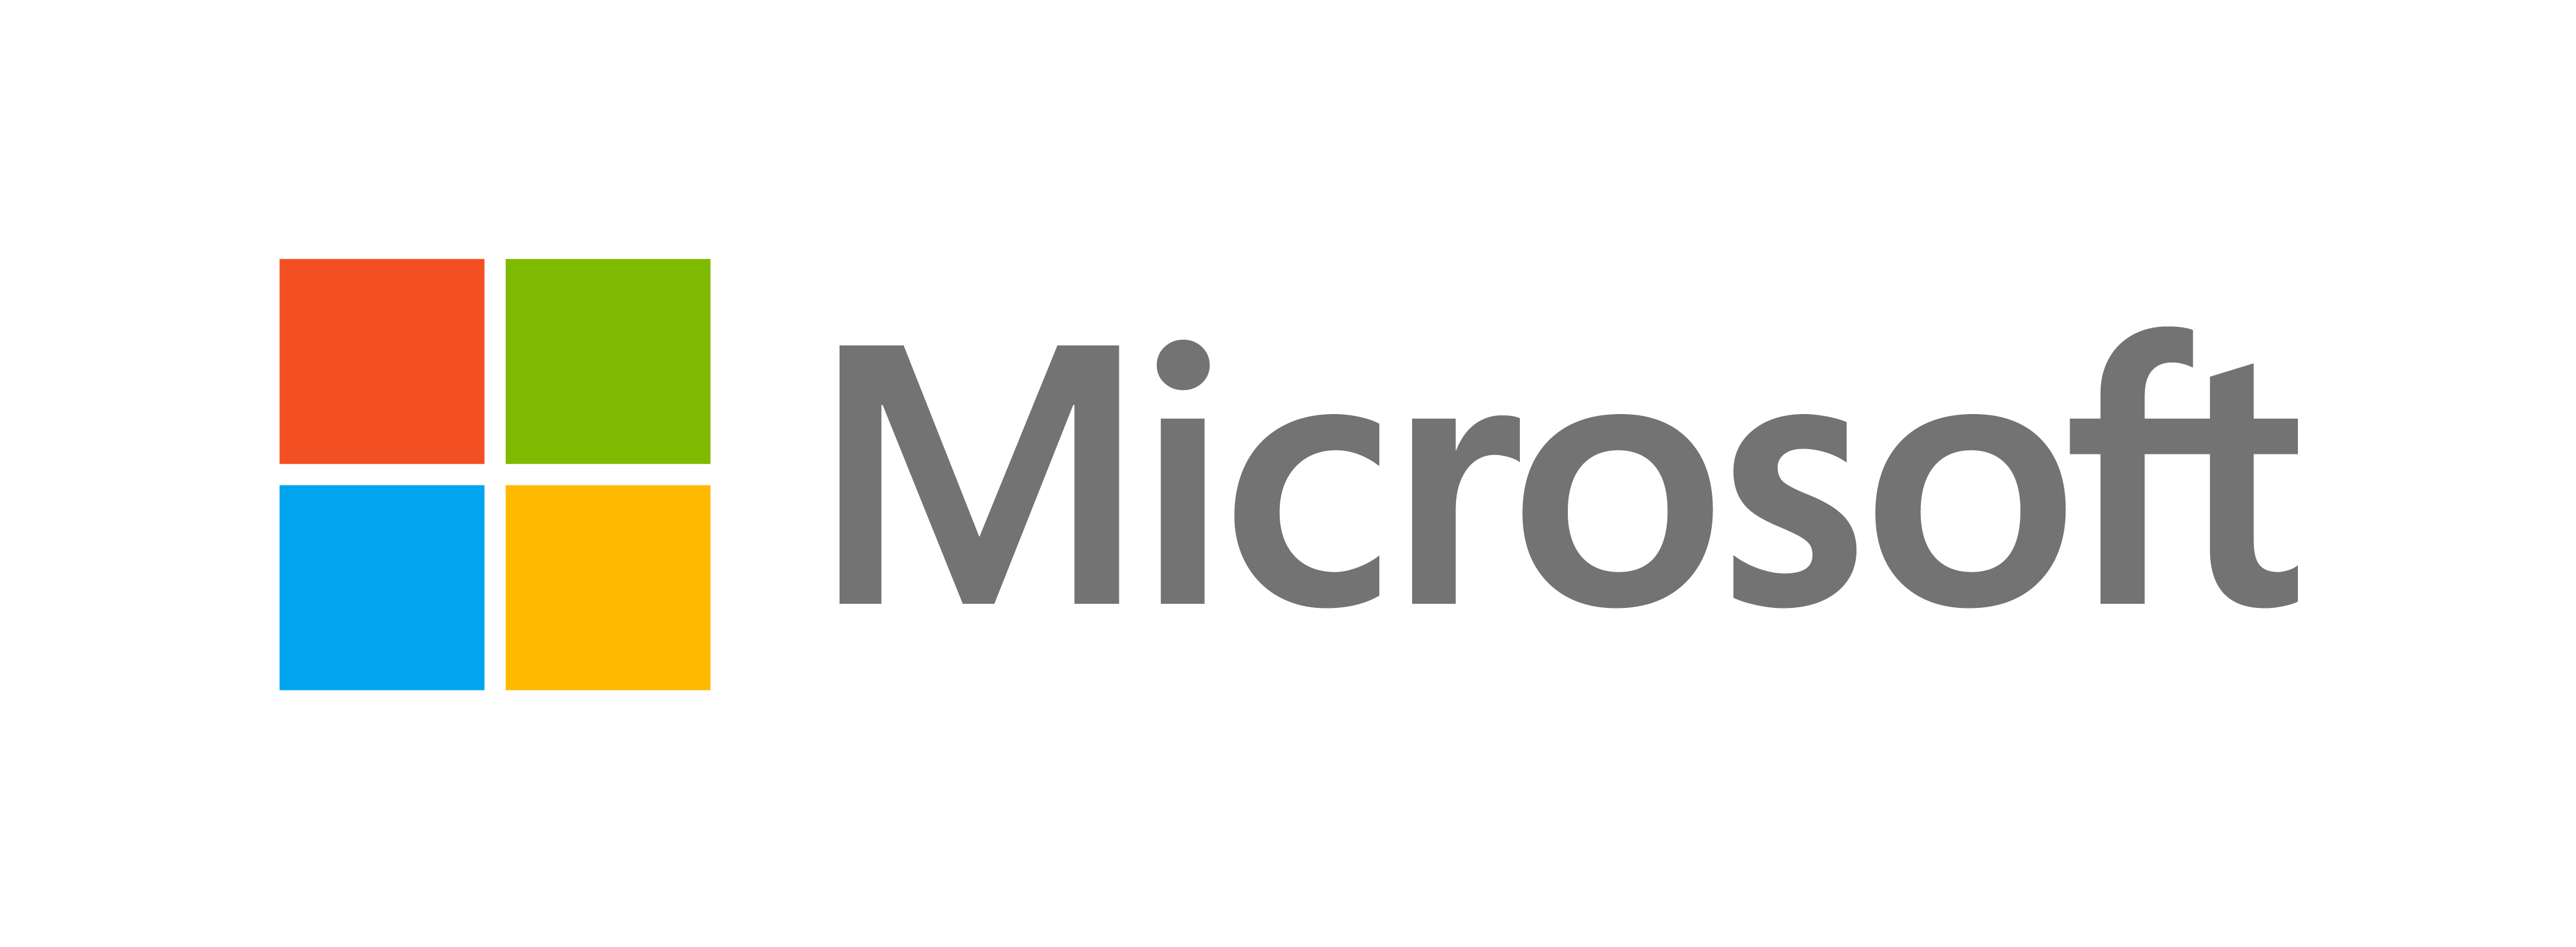 Microsoft が新しい外観を発表 - 公式 Microsoft ブログ